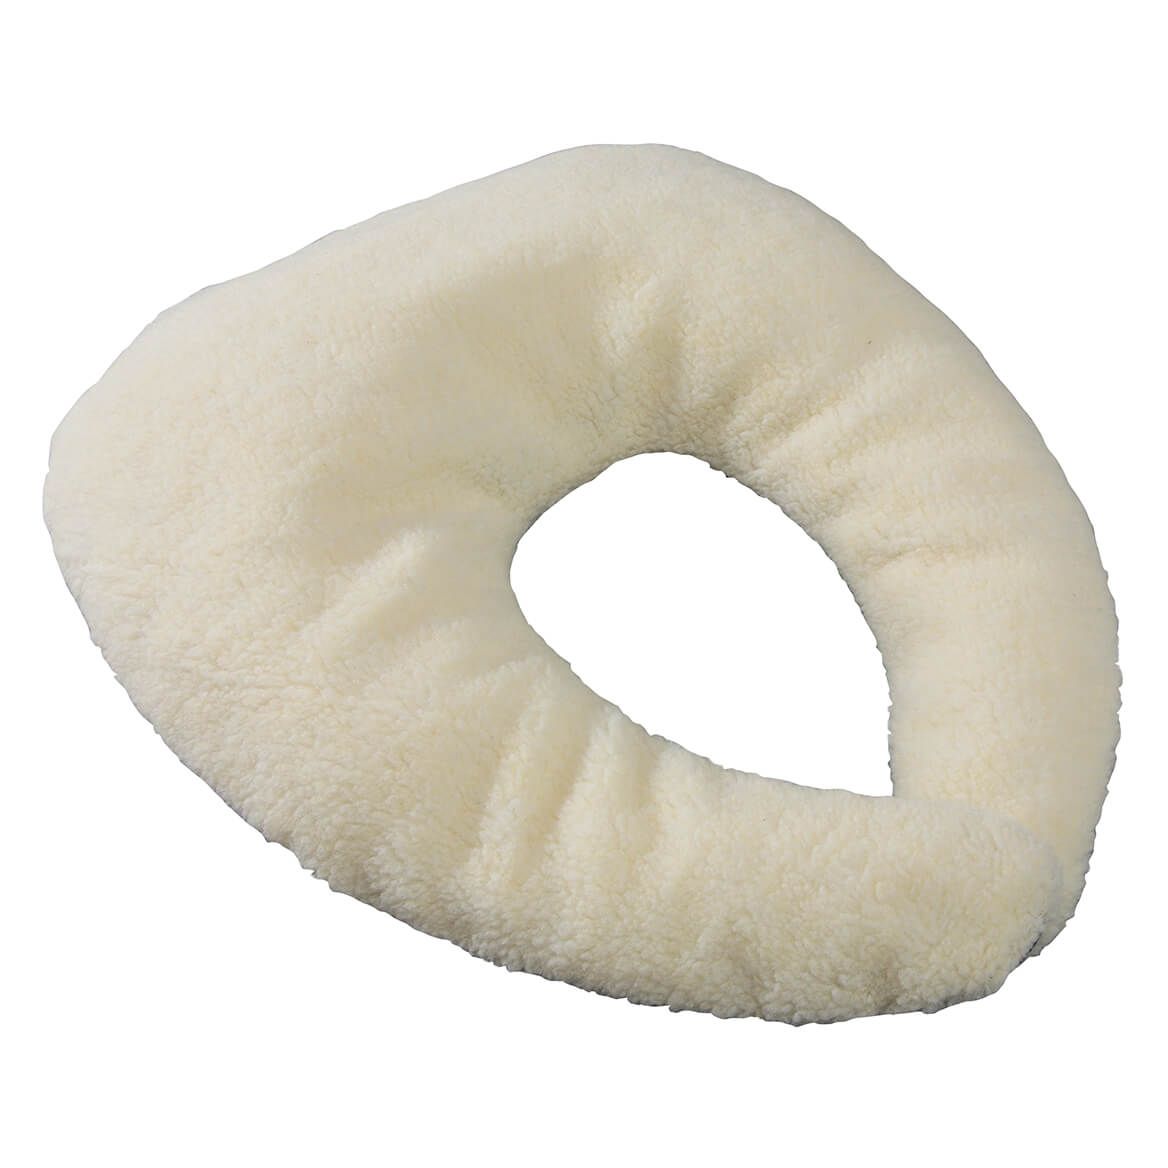 Sherpa C-Shaped Pillow + '-' + 356549